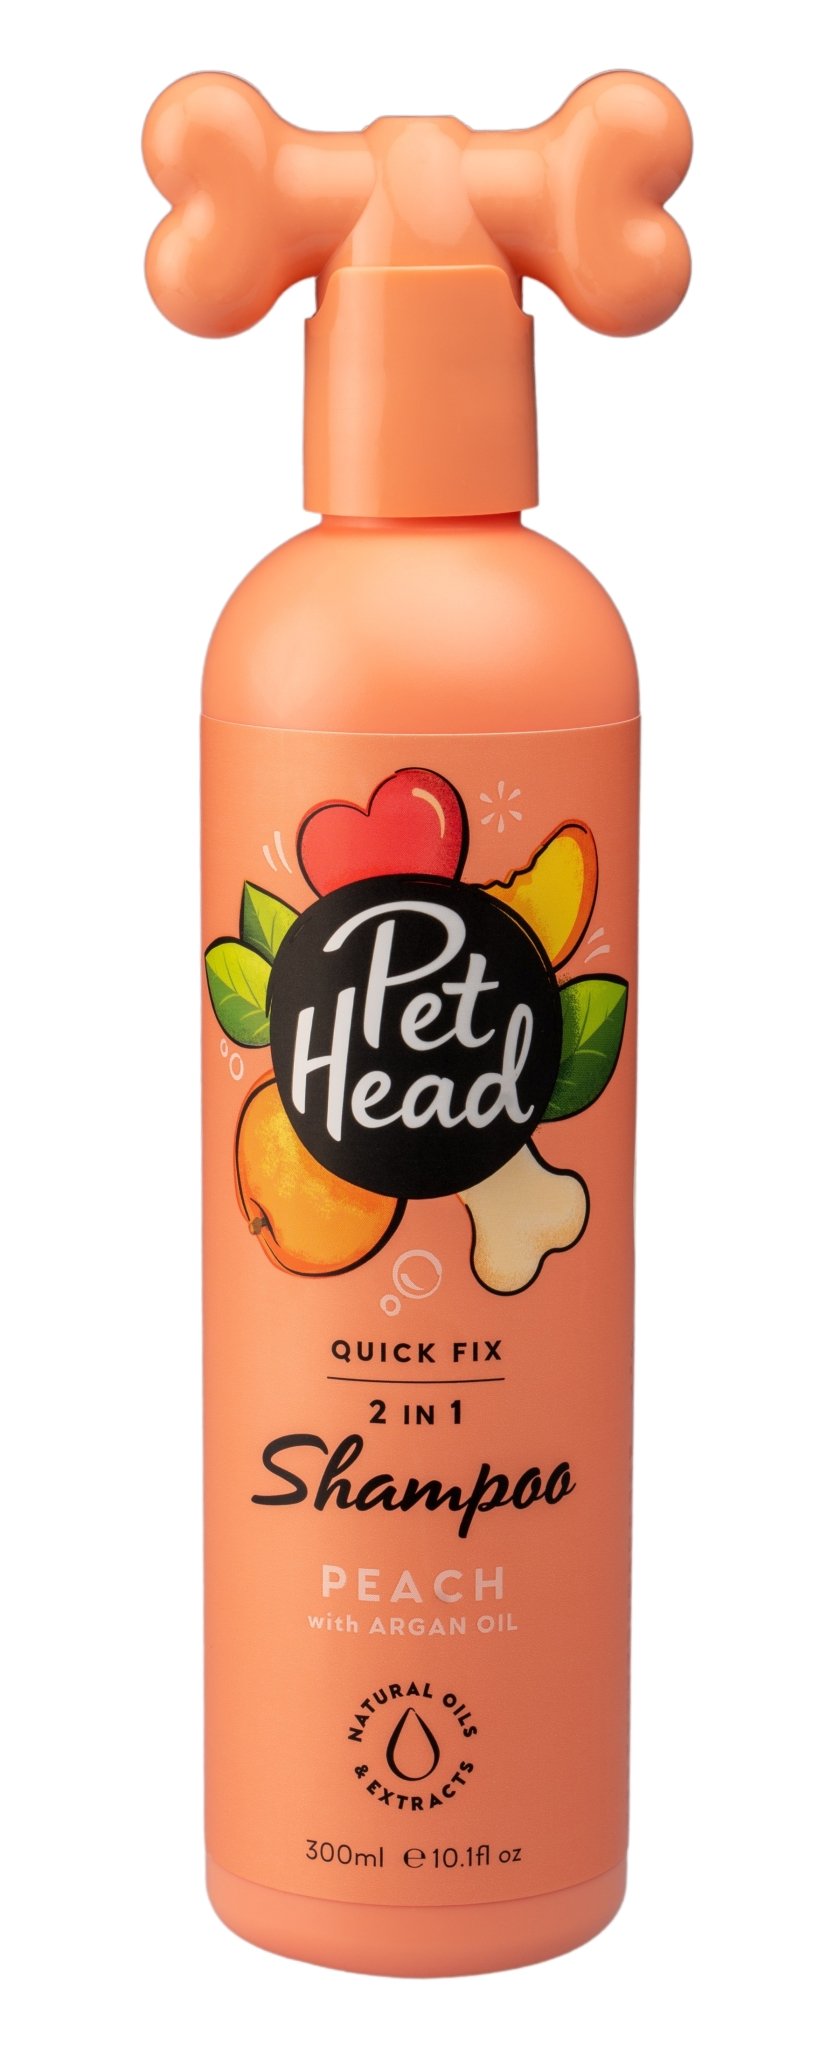 Pet Head Quick Fix 2In1 Shampoo 300ml